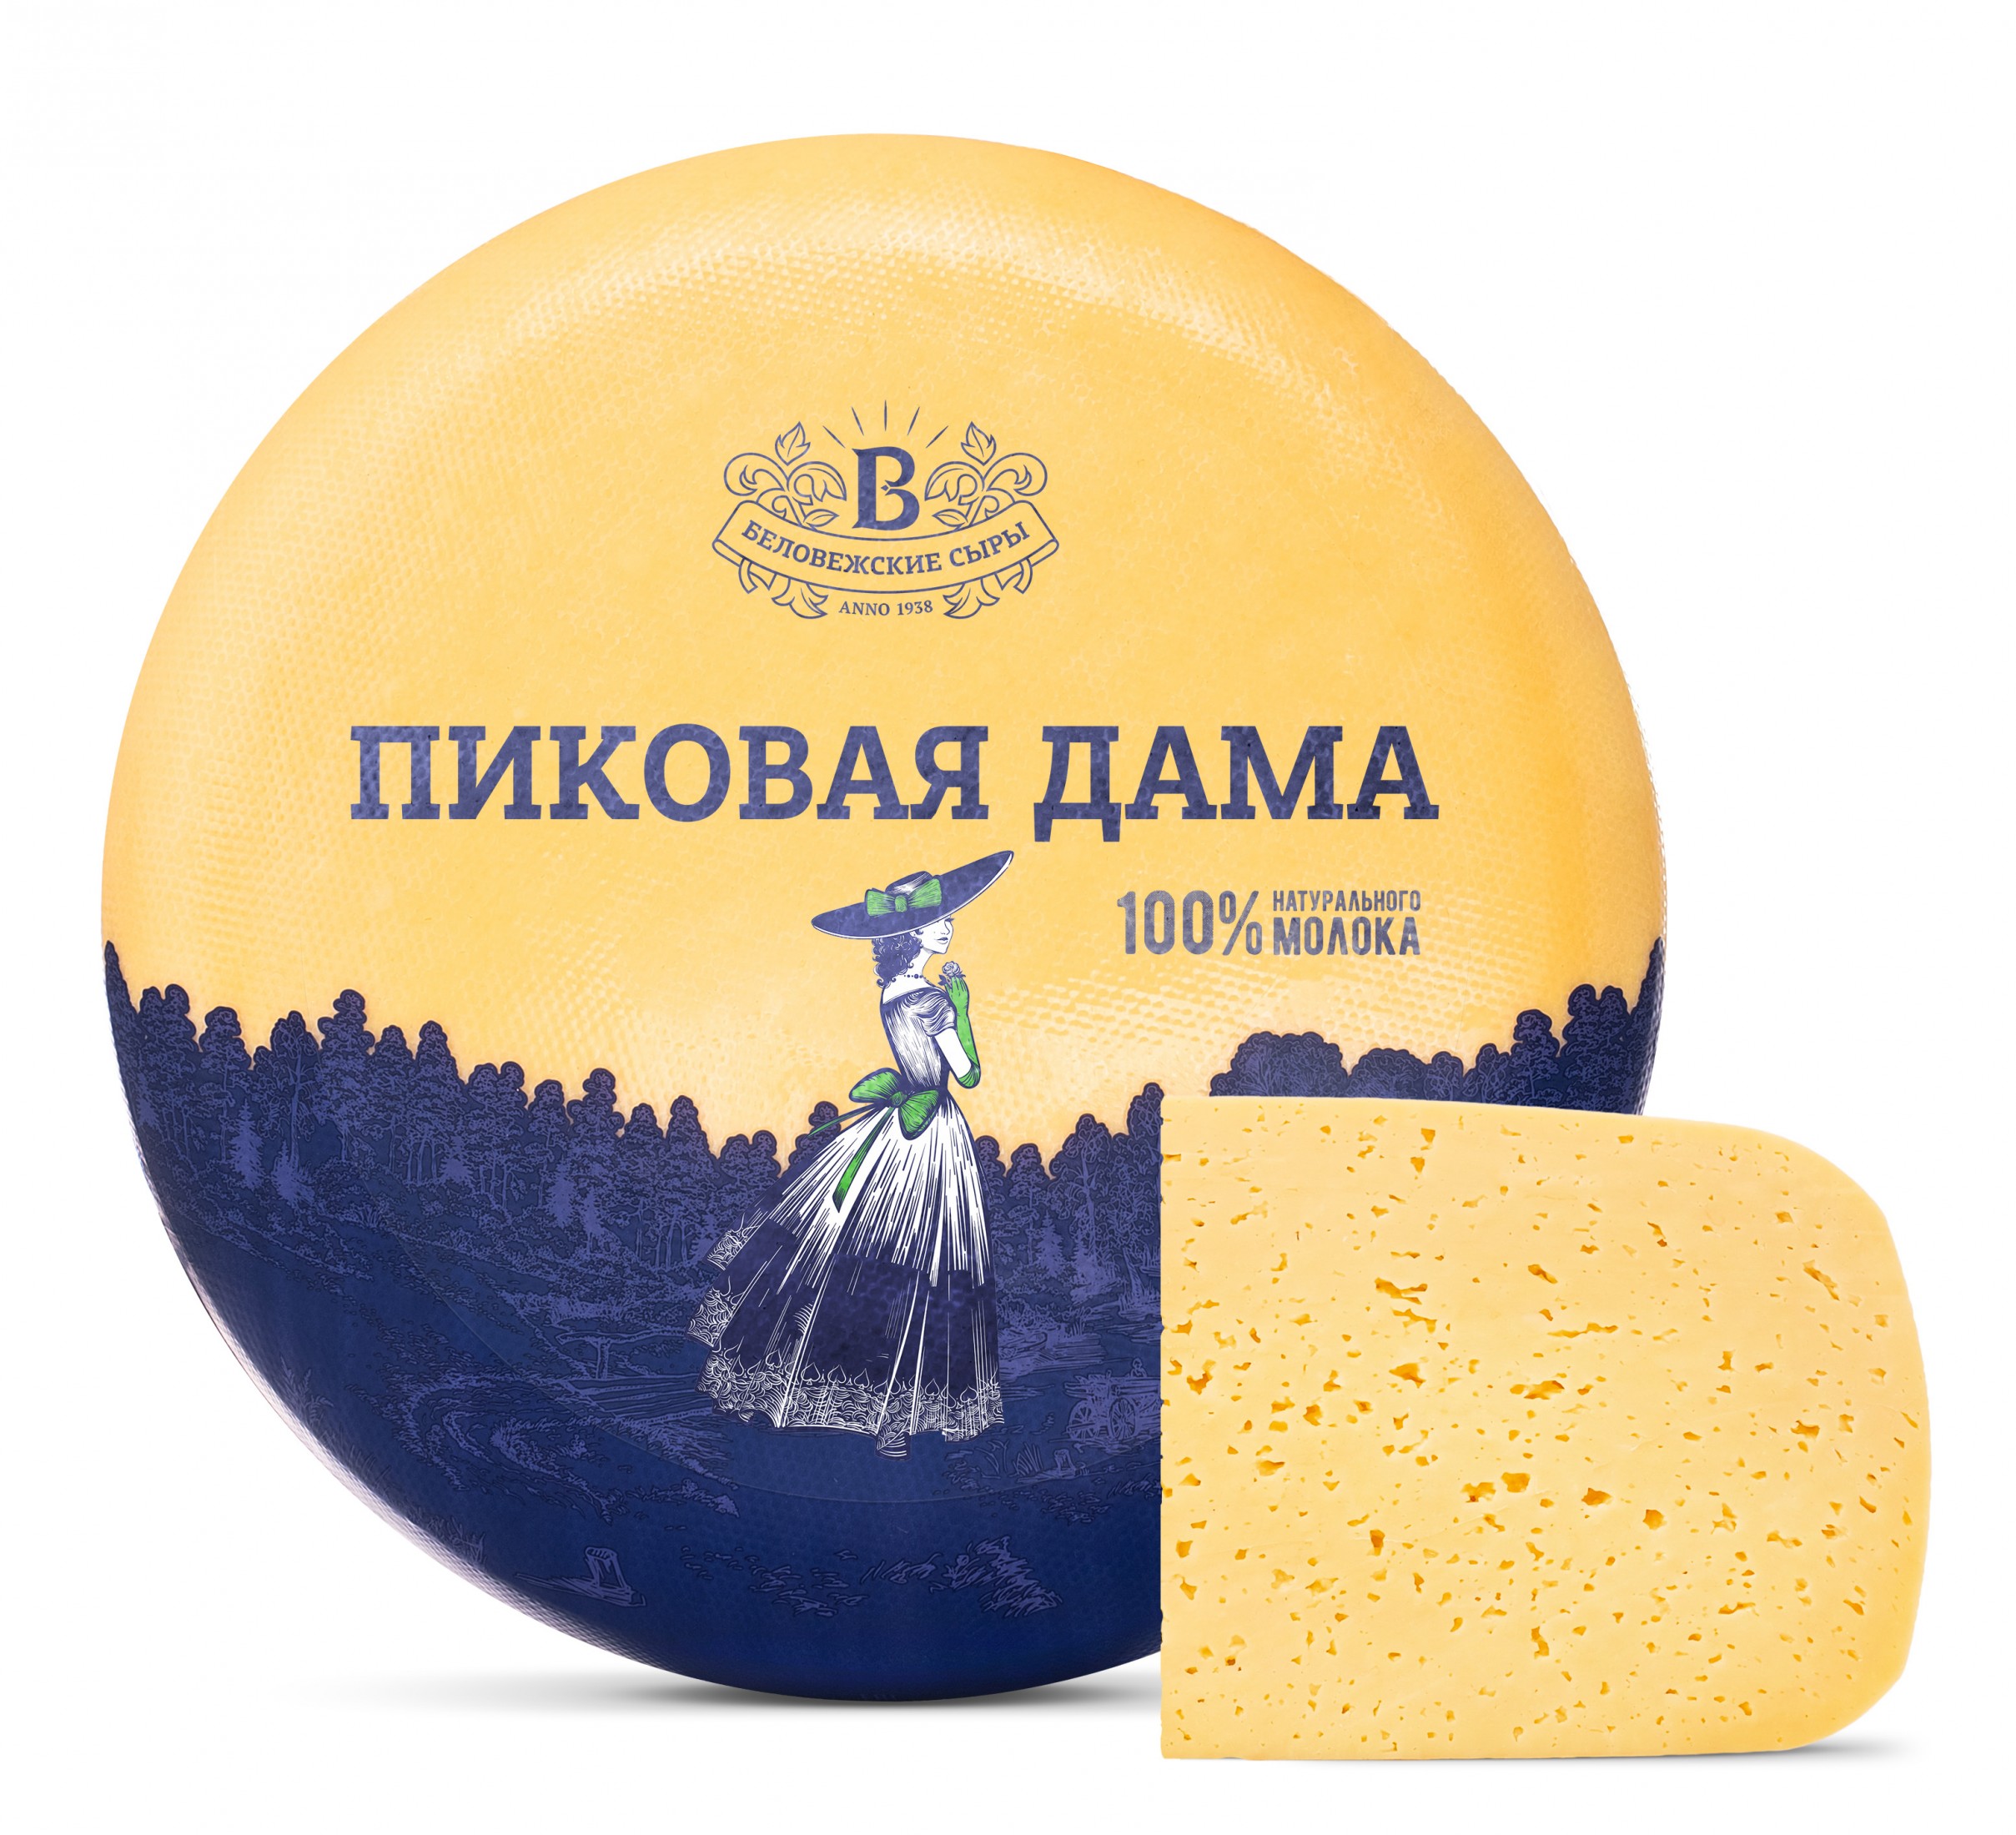 Сыр "Пиковая дама" с ароматом грецкого ореха | Интернет-магазин Gostpp